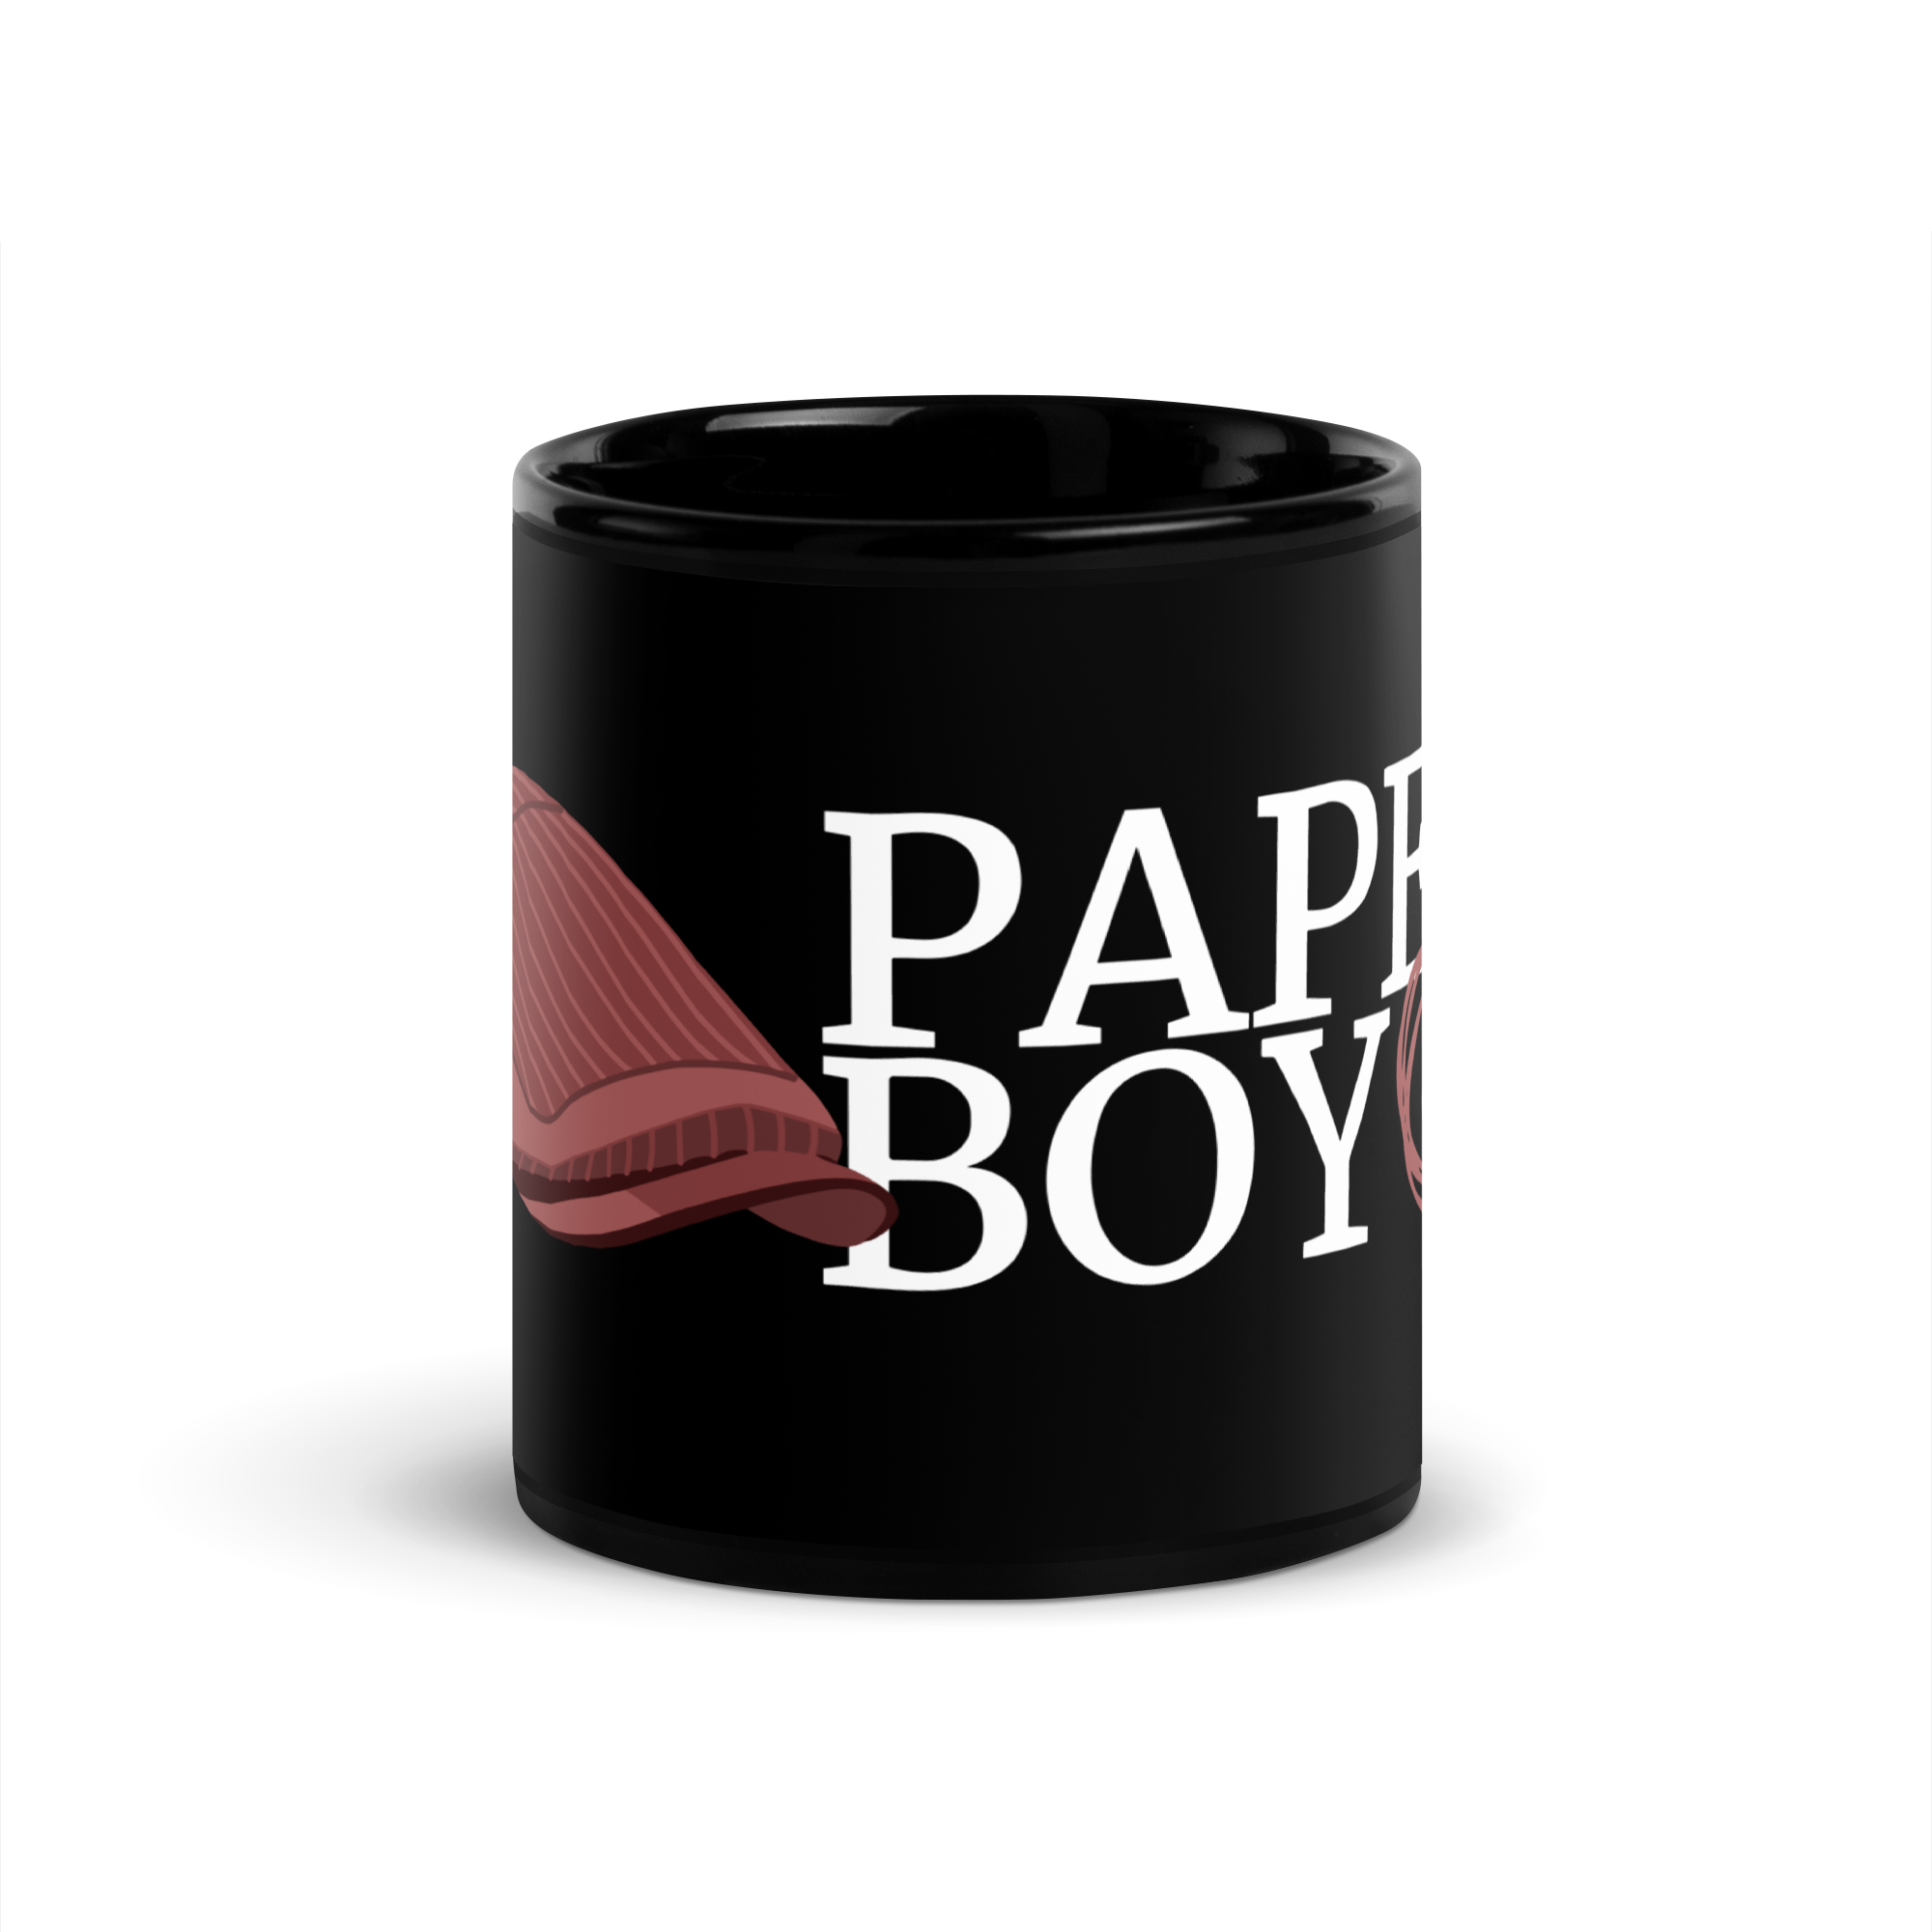 Paperboy Le Club Black Glossy Mug